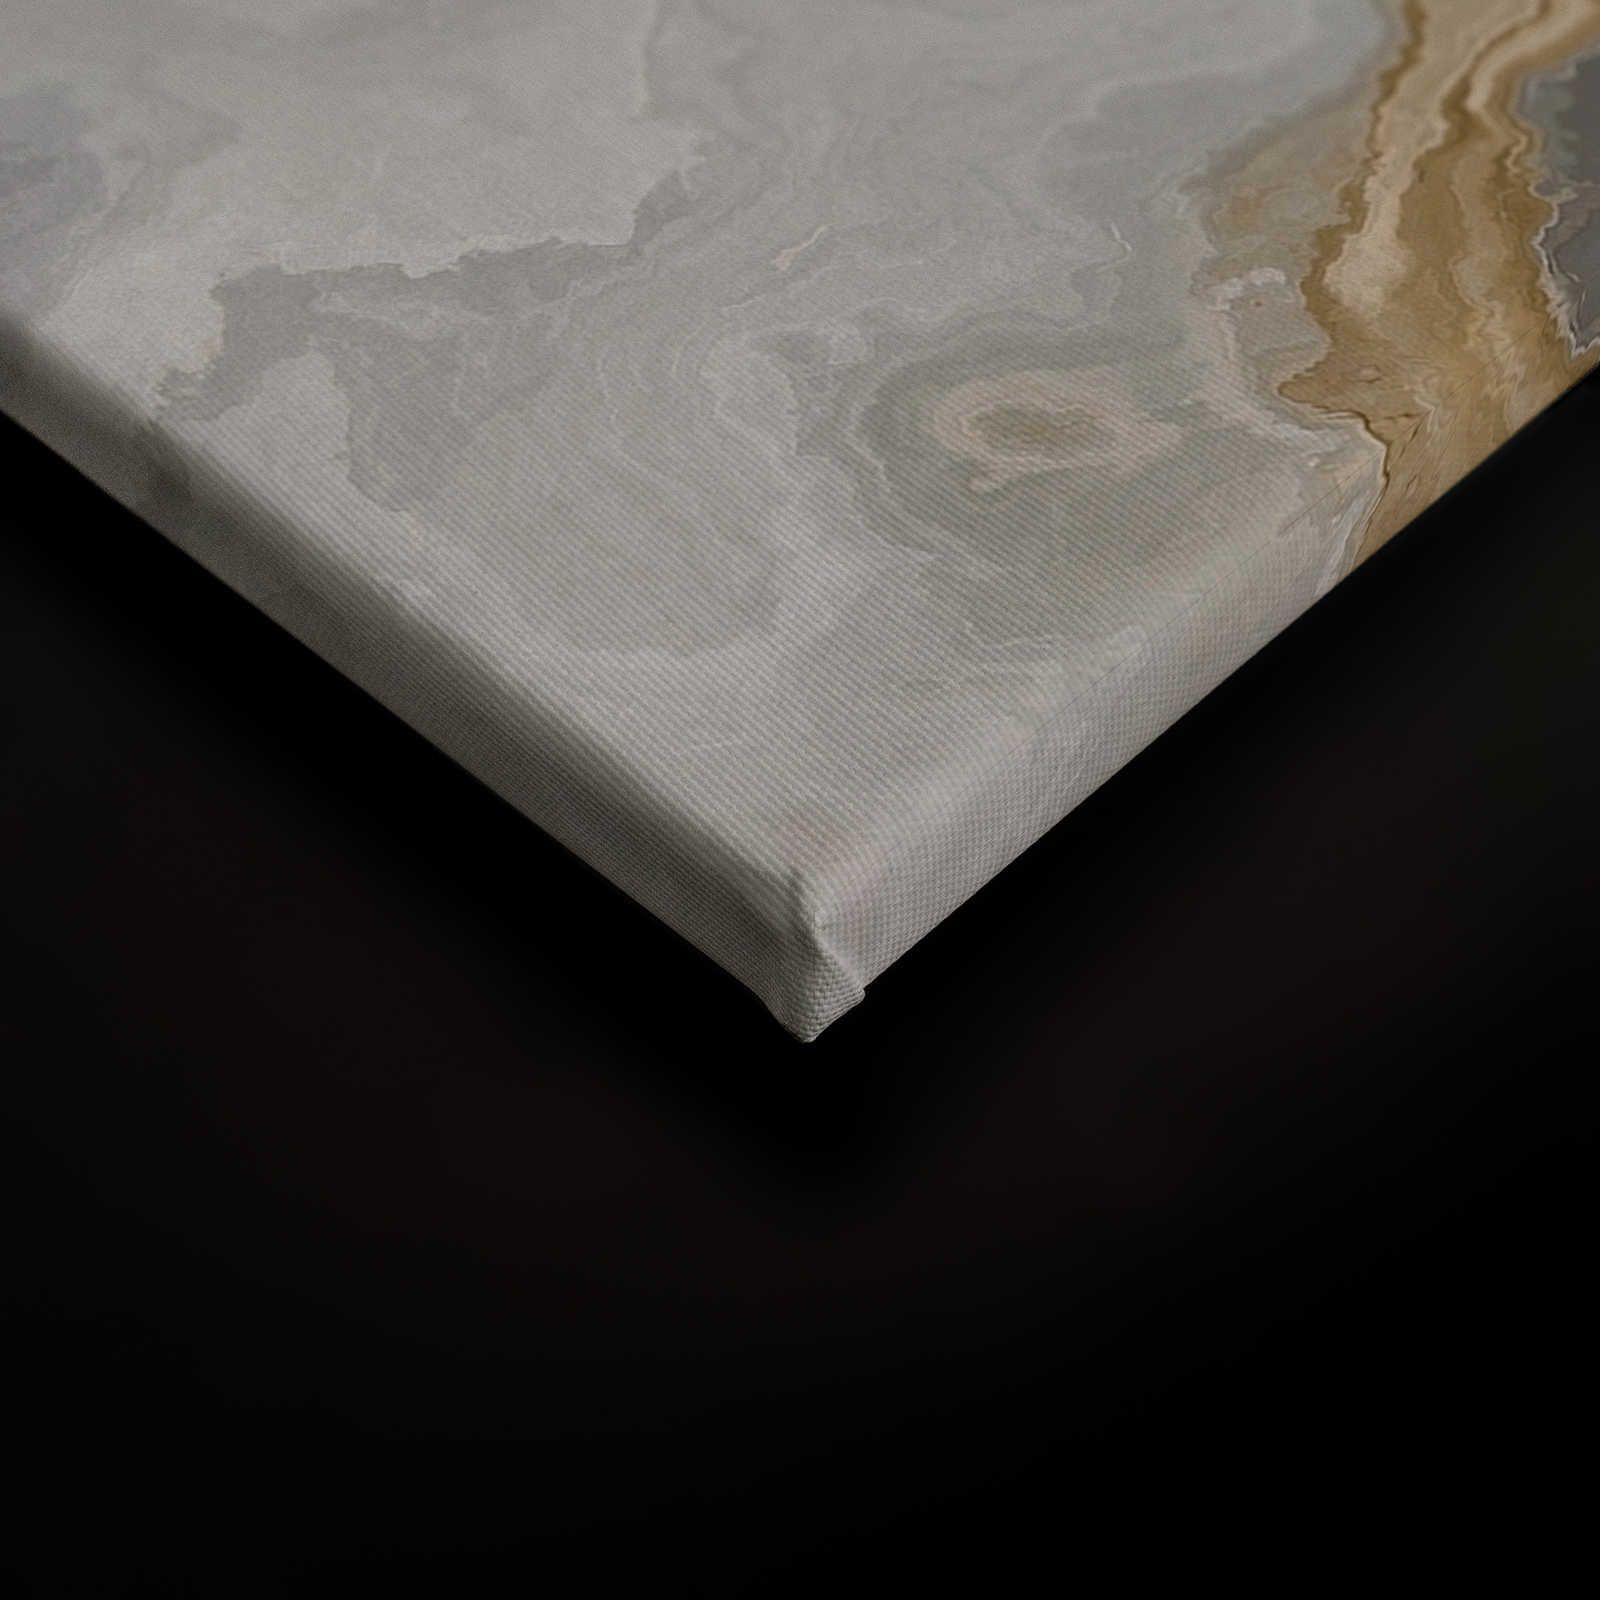             Canvas schilderij steen look kwarts met marmering - 0,90 m x 0,60 m
        